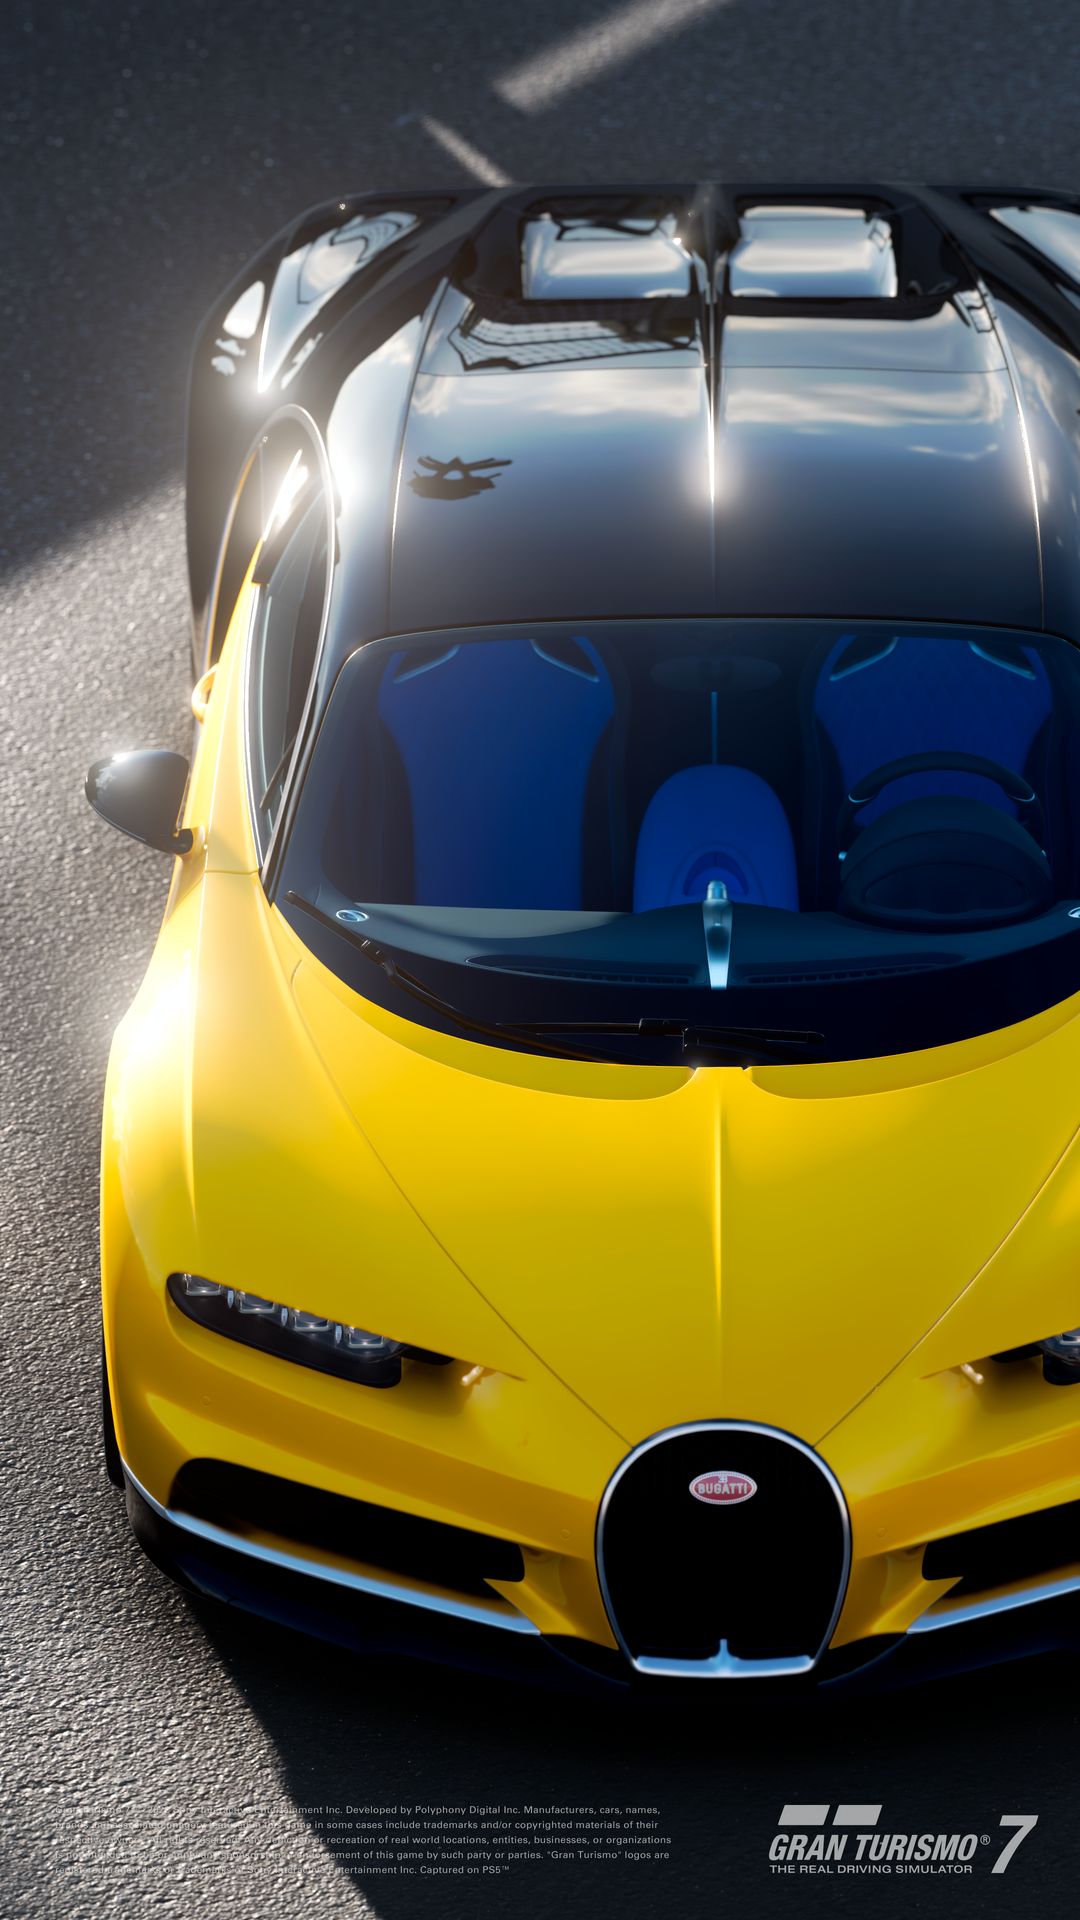 Gran Turismo 7 recebe atualização que traz 4 carros novos - Meia-Lua